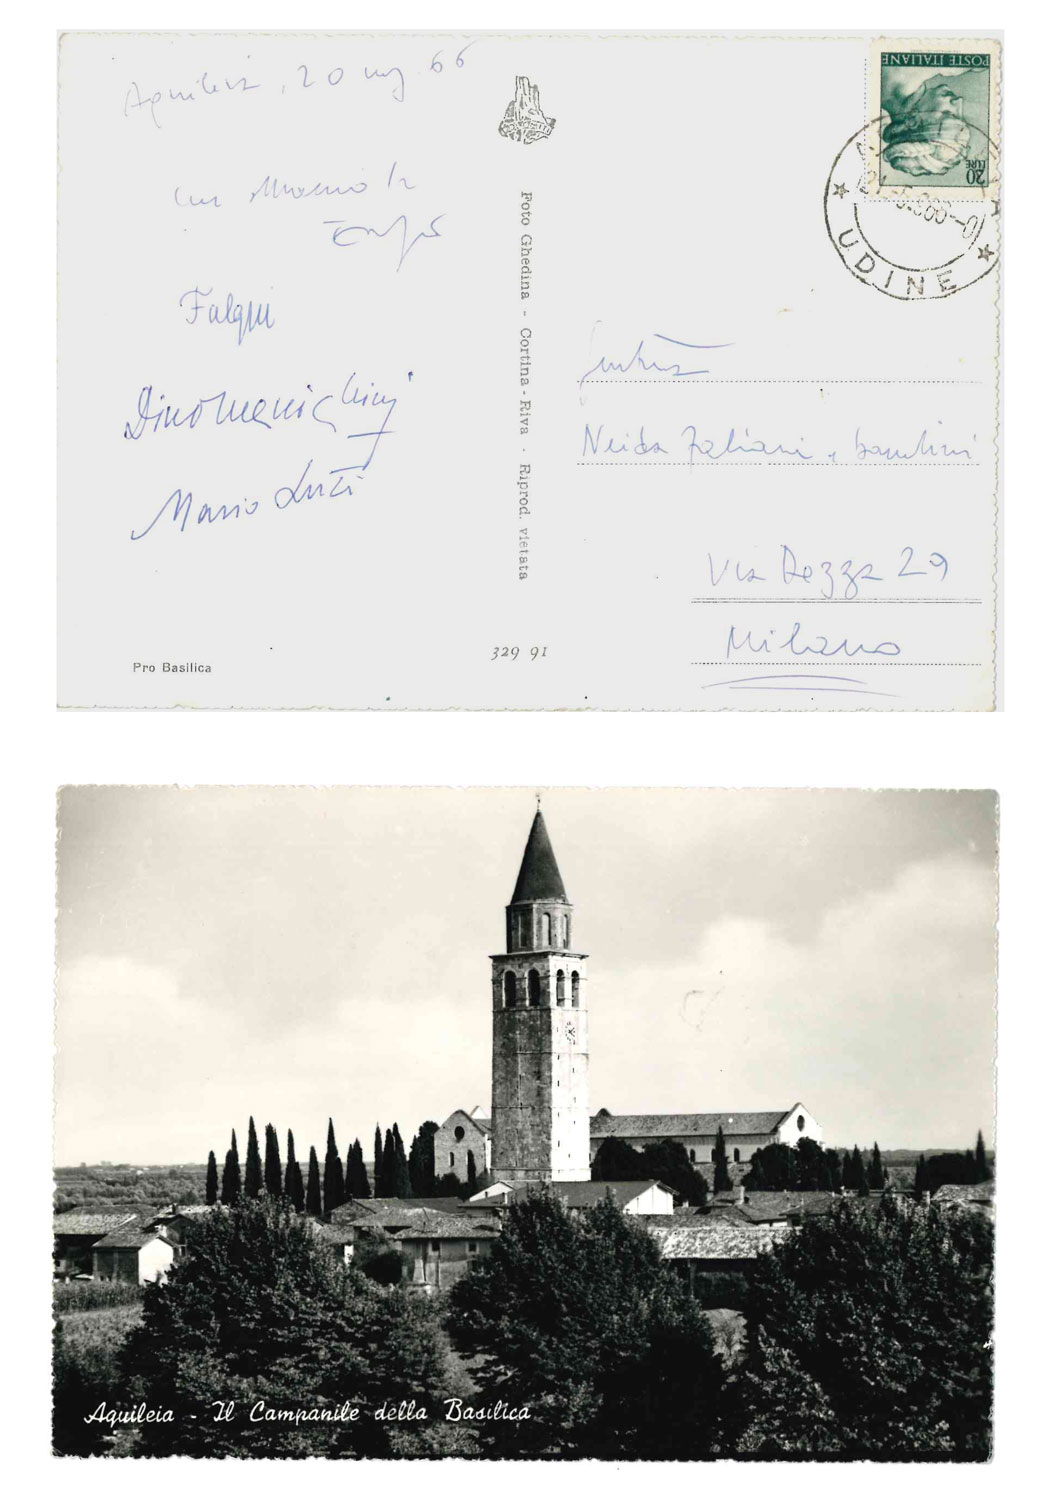 cartolina postale viaggiata, con firme autografe di luzi, falqui, fabiani e menichini; inviata a neida, moglie di fabiani